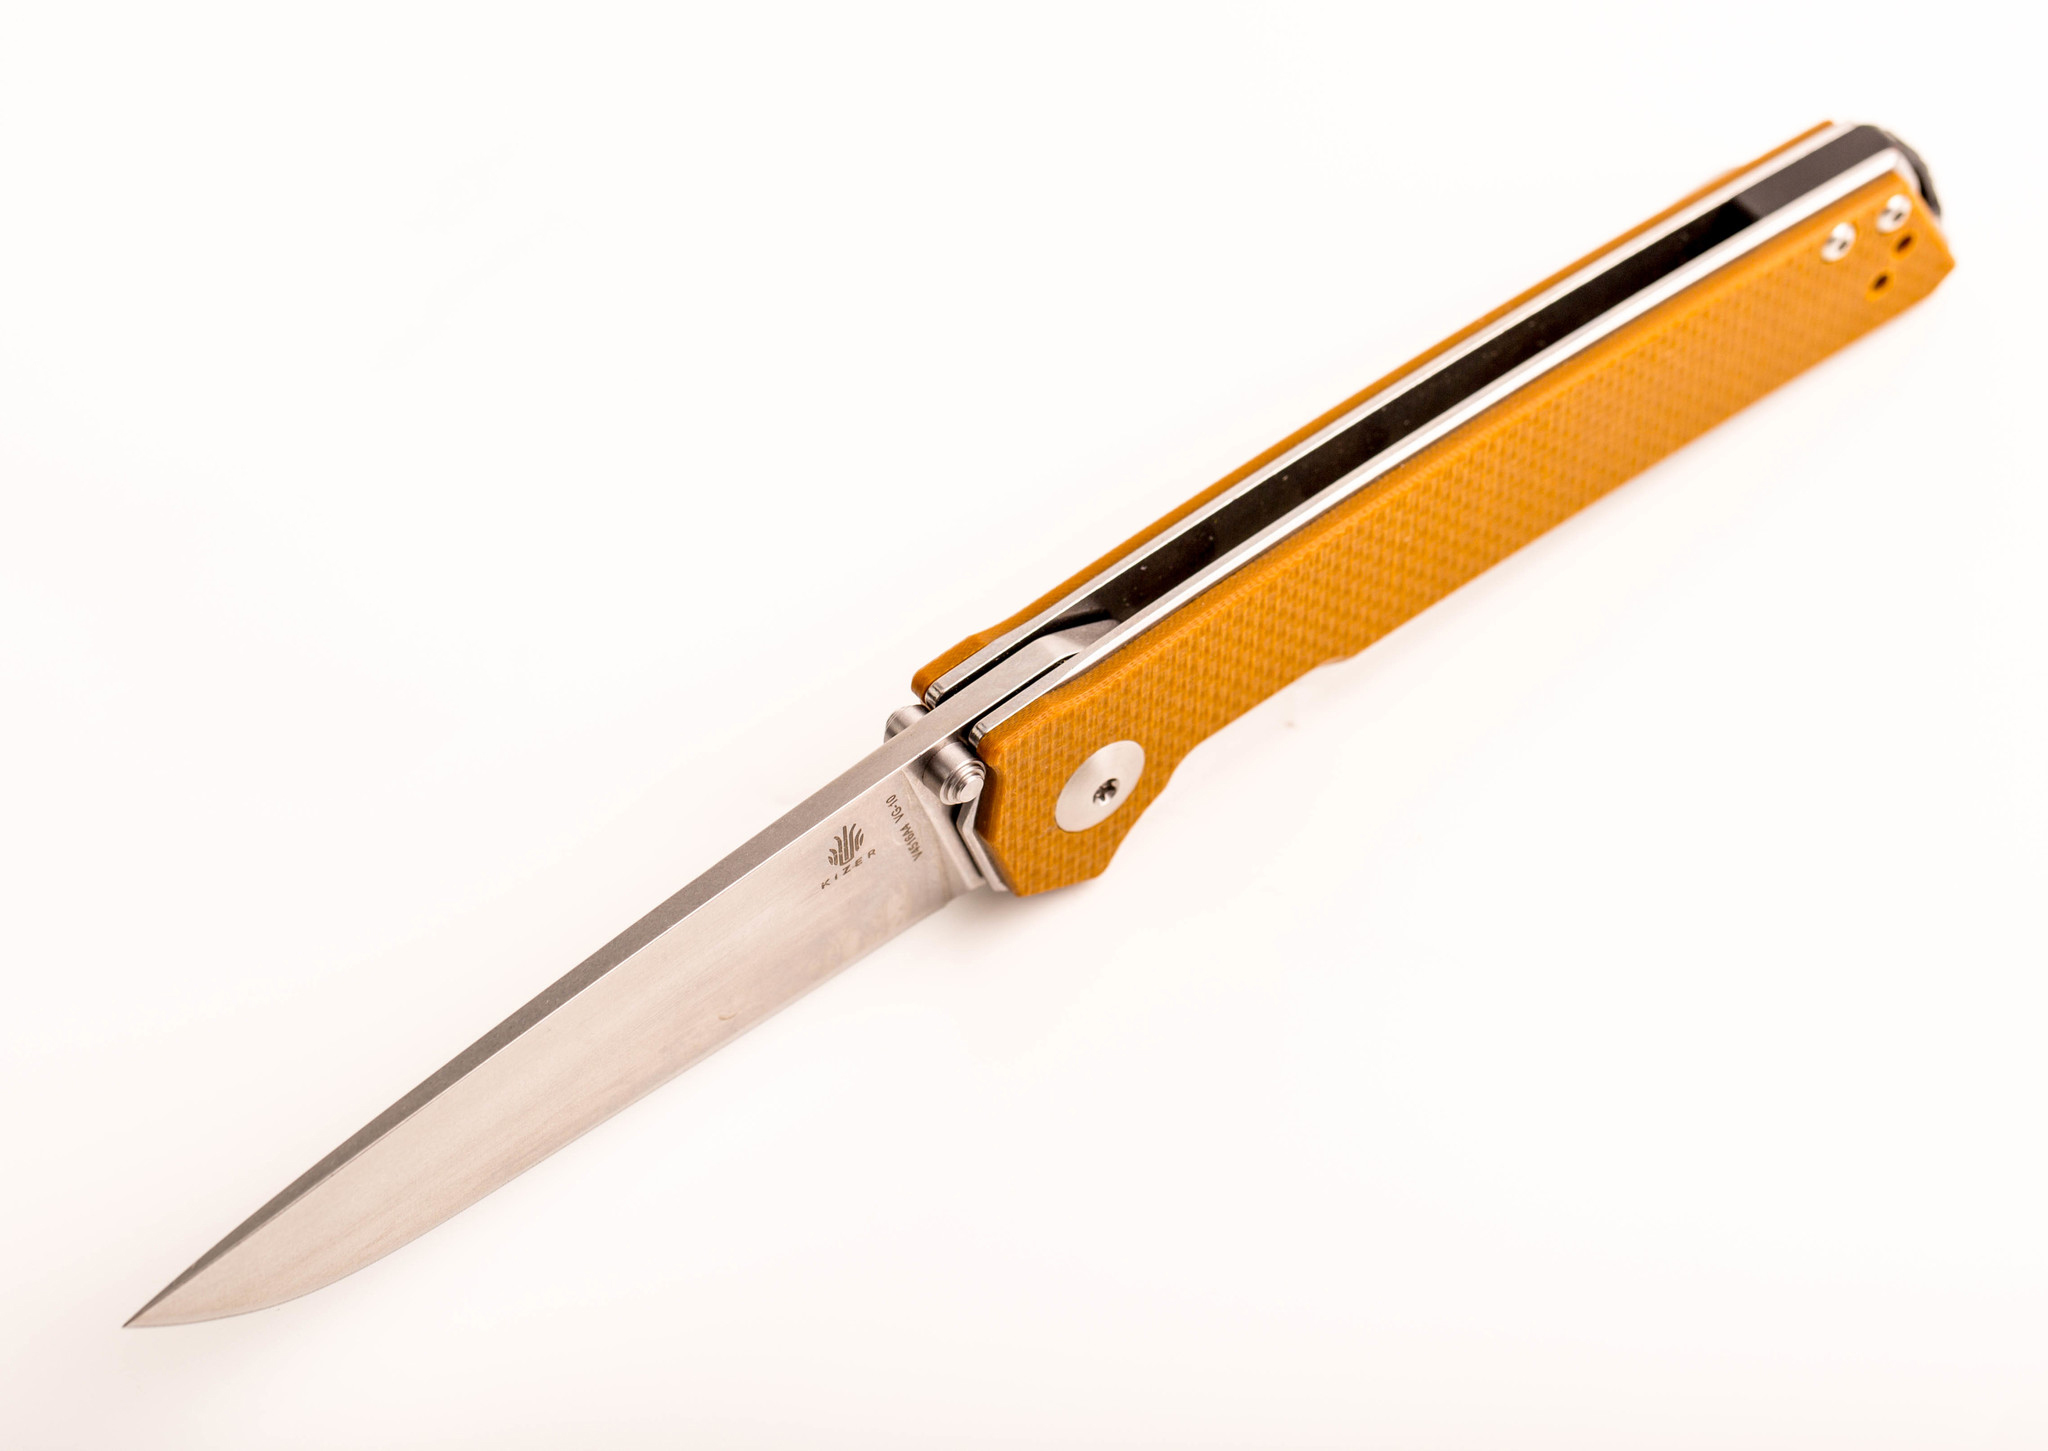 Складной нож Kizer Domin, сталь VG-10, рукоять G10, коричневый от Ножиков